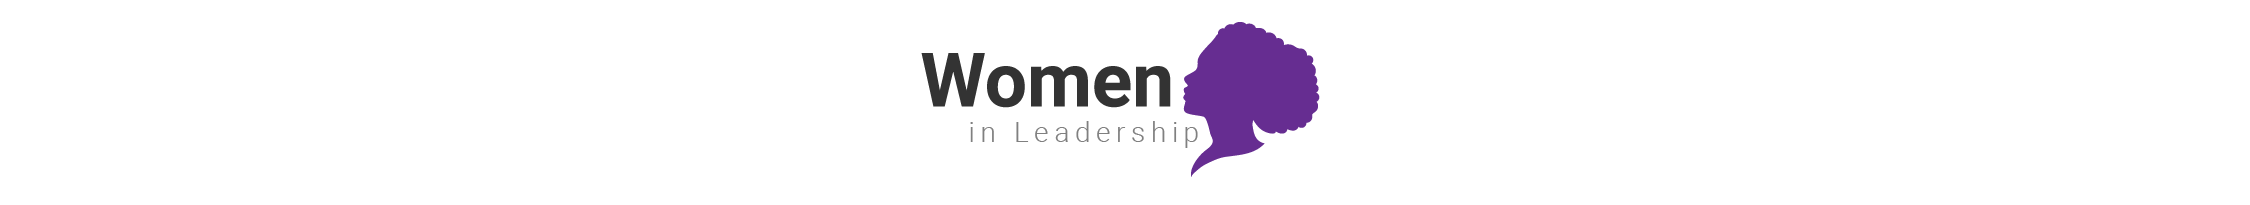 Women in Leadership logo